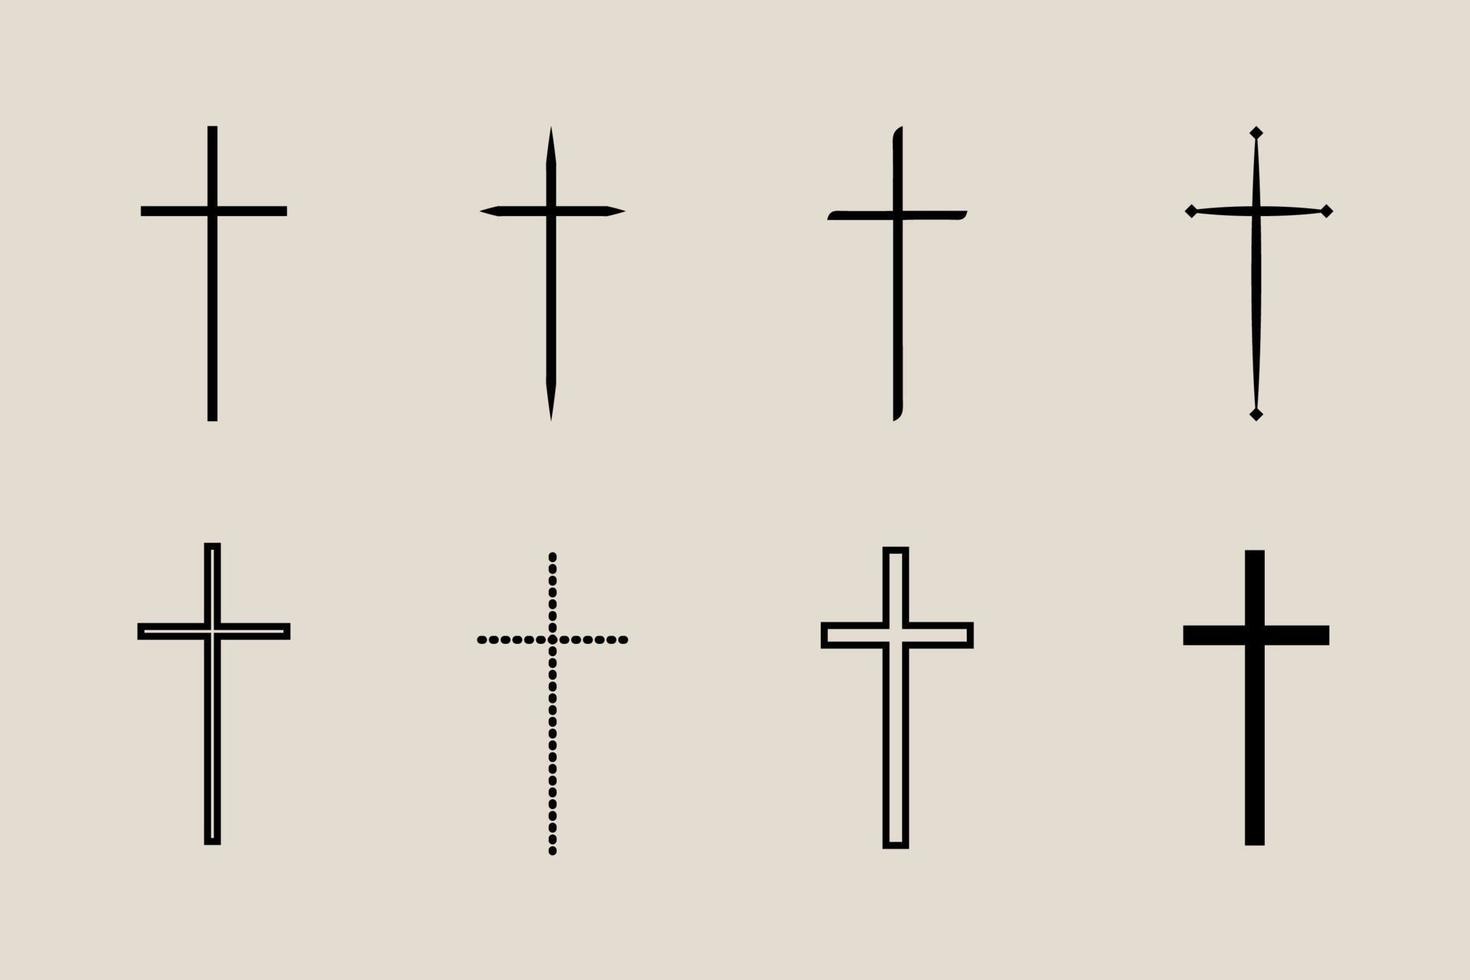 decorativo crucifixo religião católico símbolo, cristão cruzes. ortodoxo fé Igreja Cruz ícones projeto, isolado plano definir. vetor